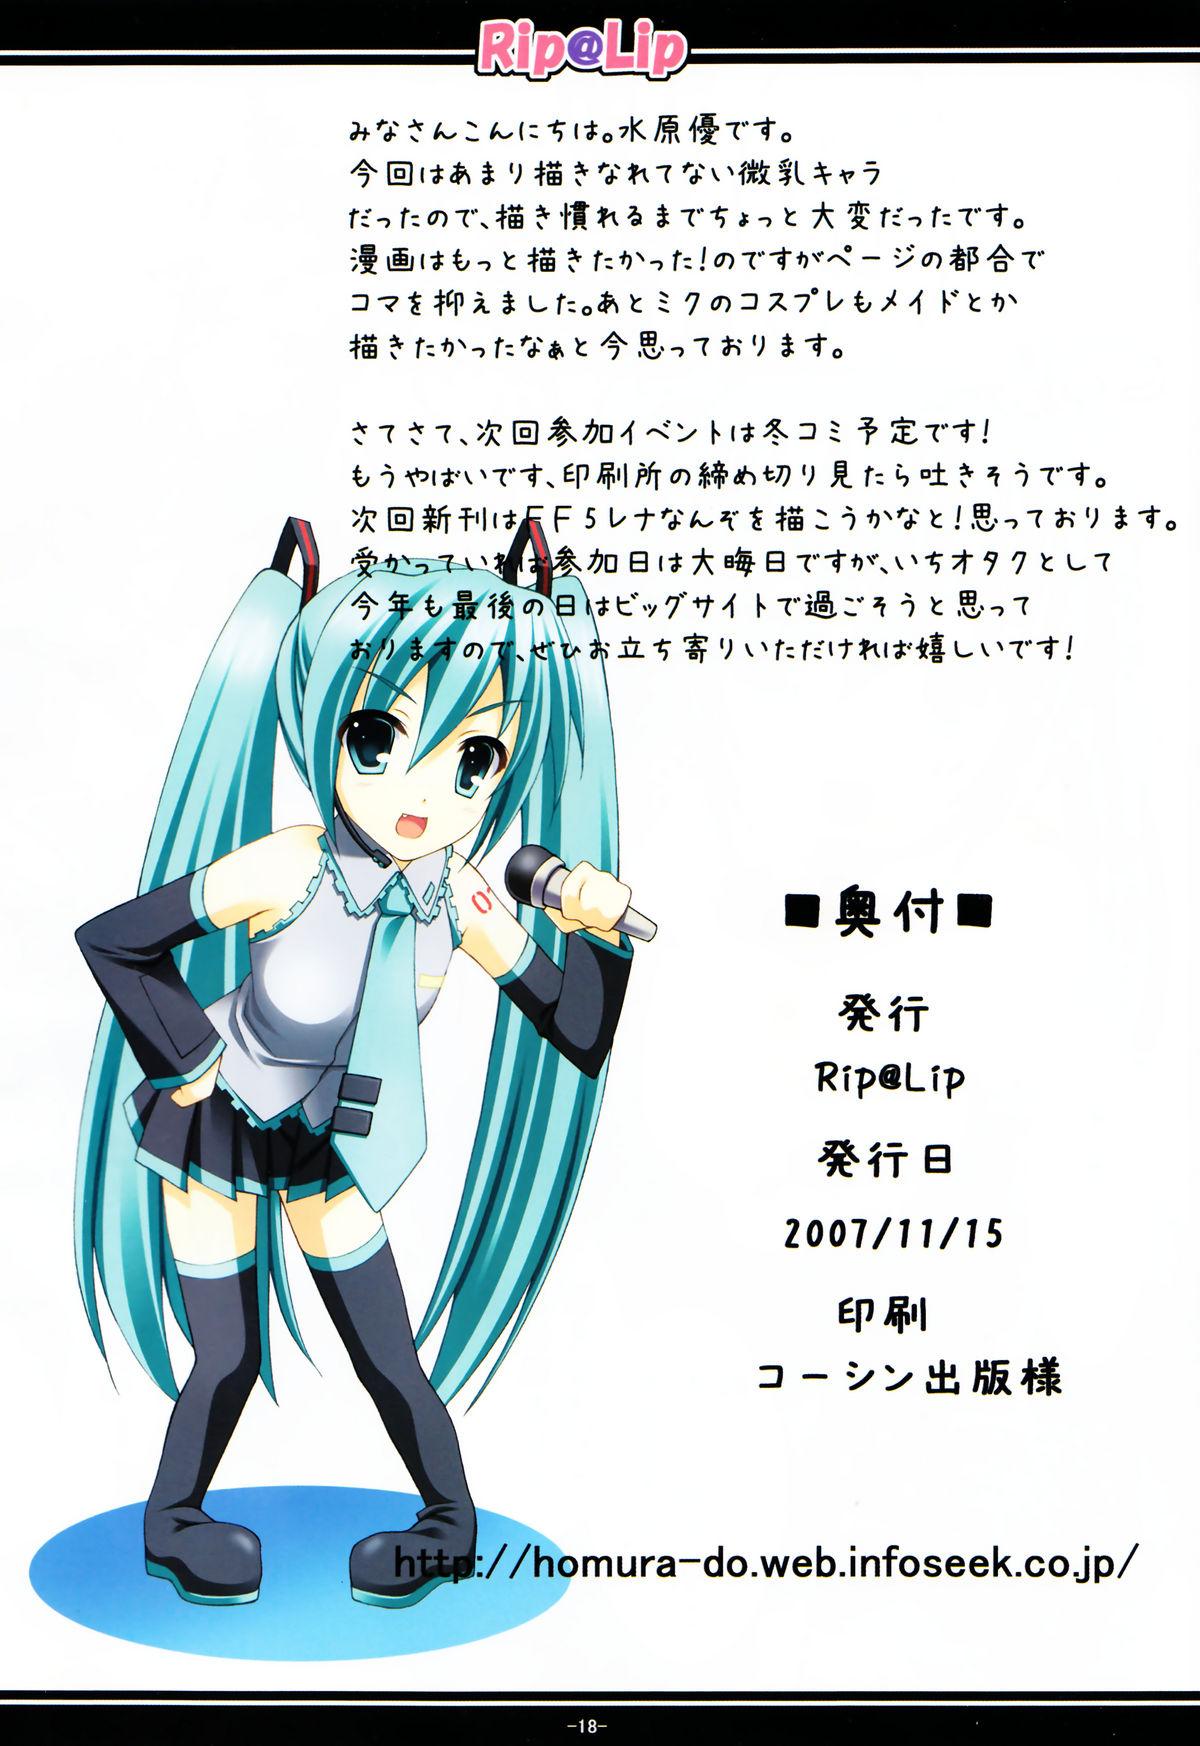 Creamy Mikku Miku ni okasarete yanyo - Vocaloid Onlyfans - Page 18